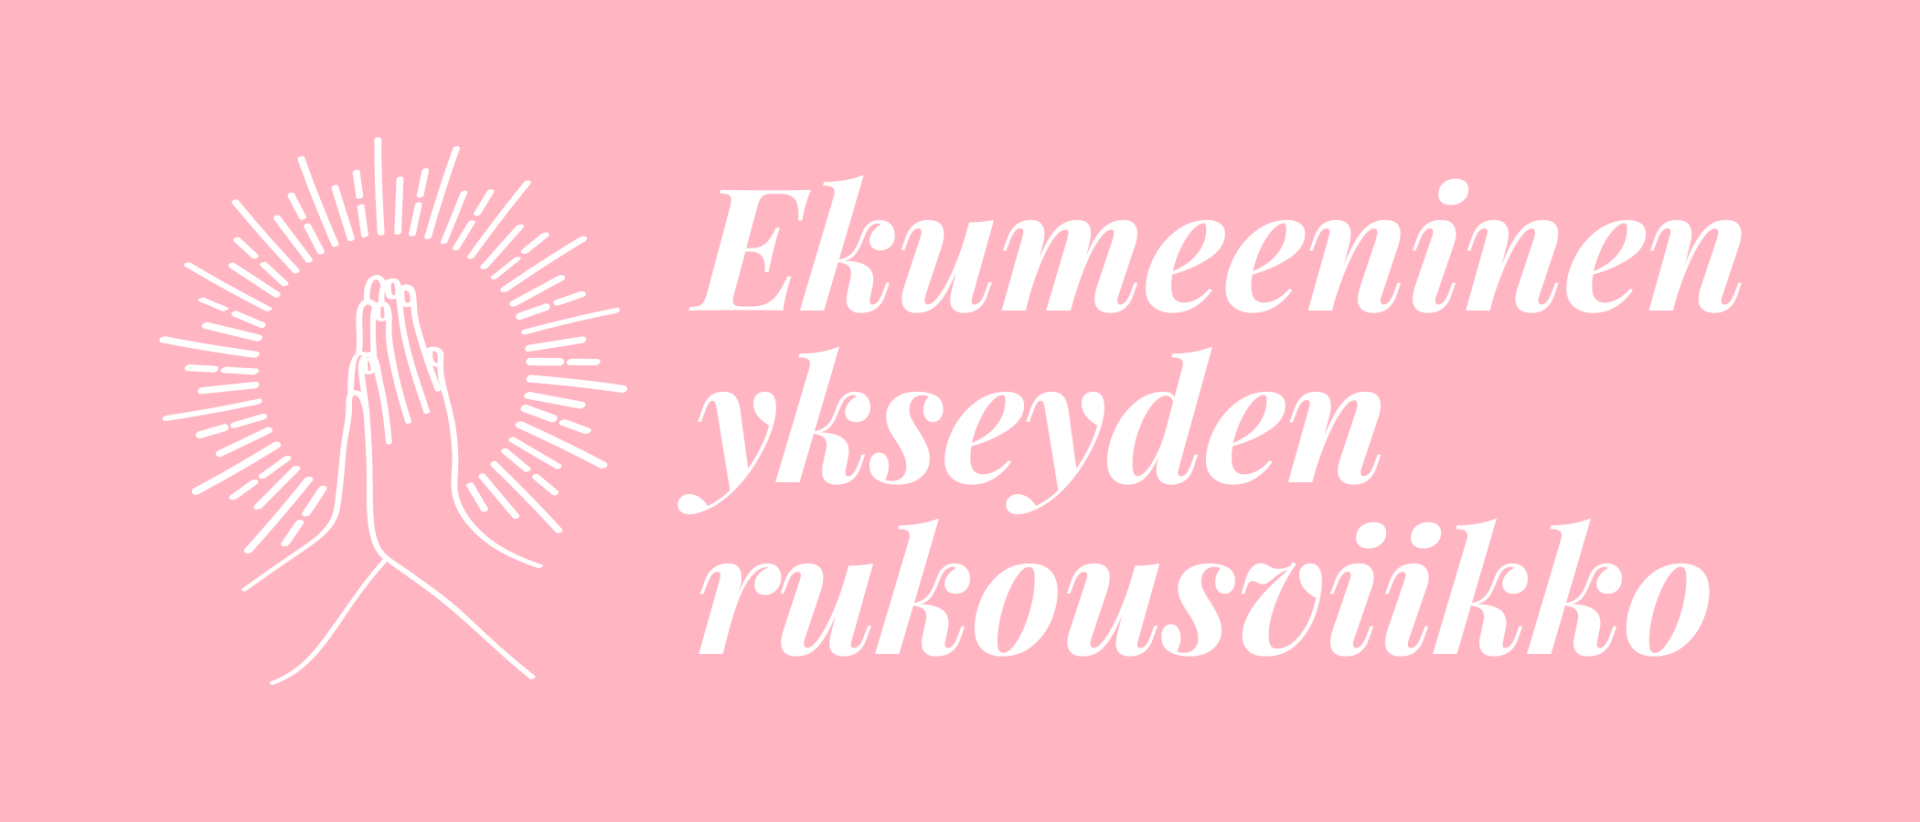 Kuvassa vaaleanpunaisella tekstillä lukee: Ekumeeninen ykseyden rukousviikko